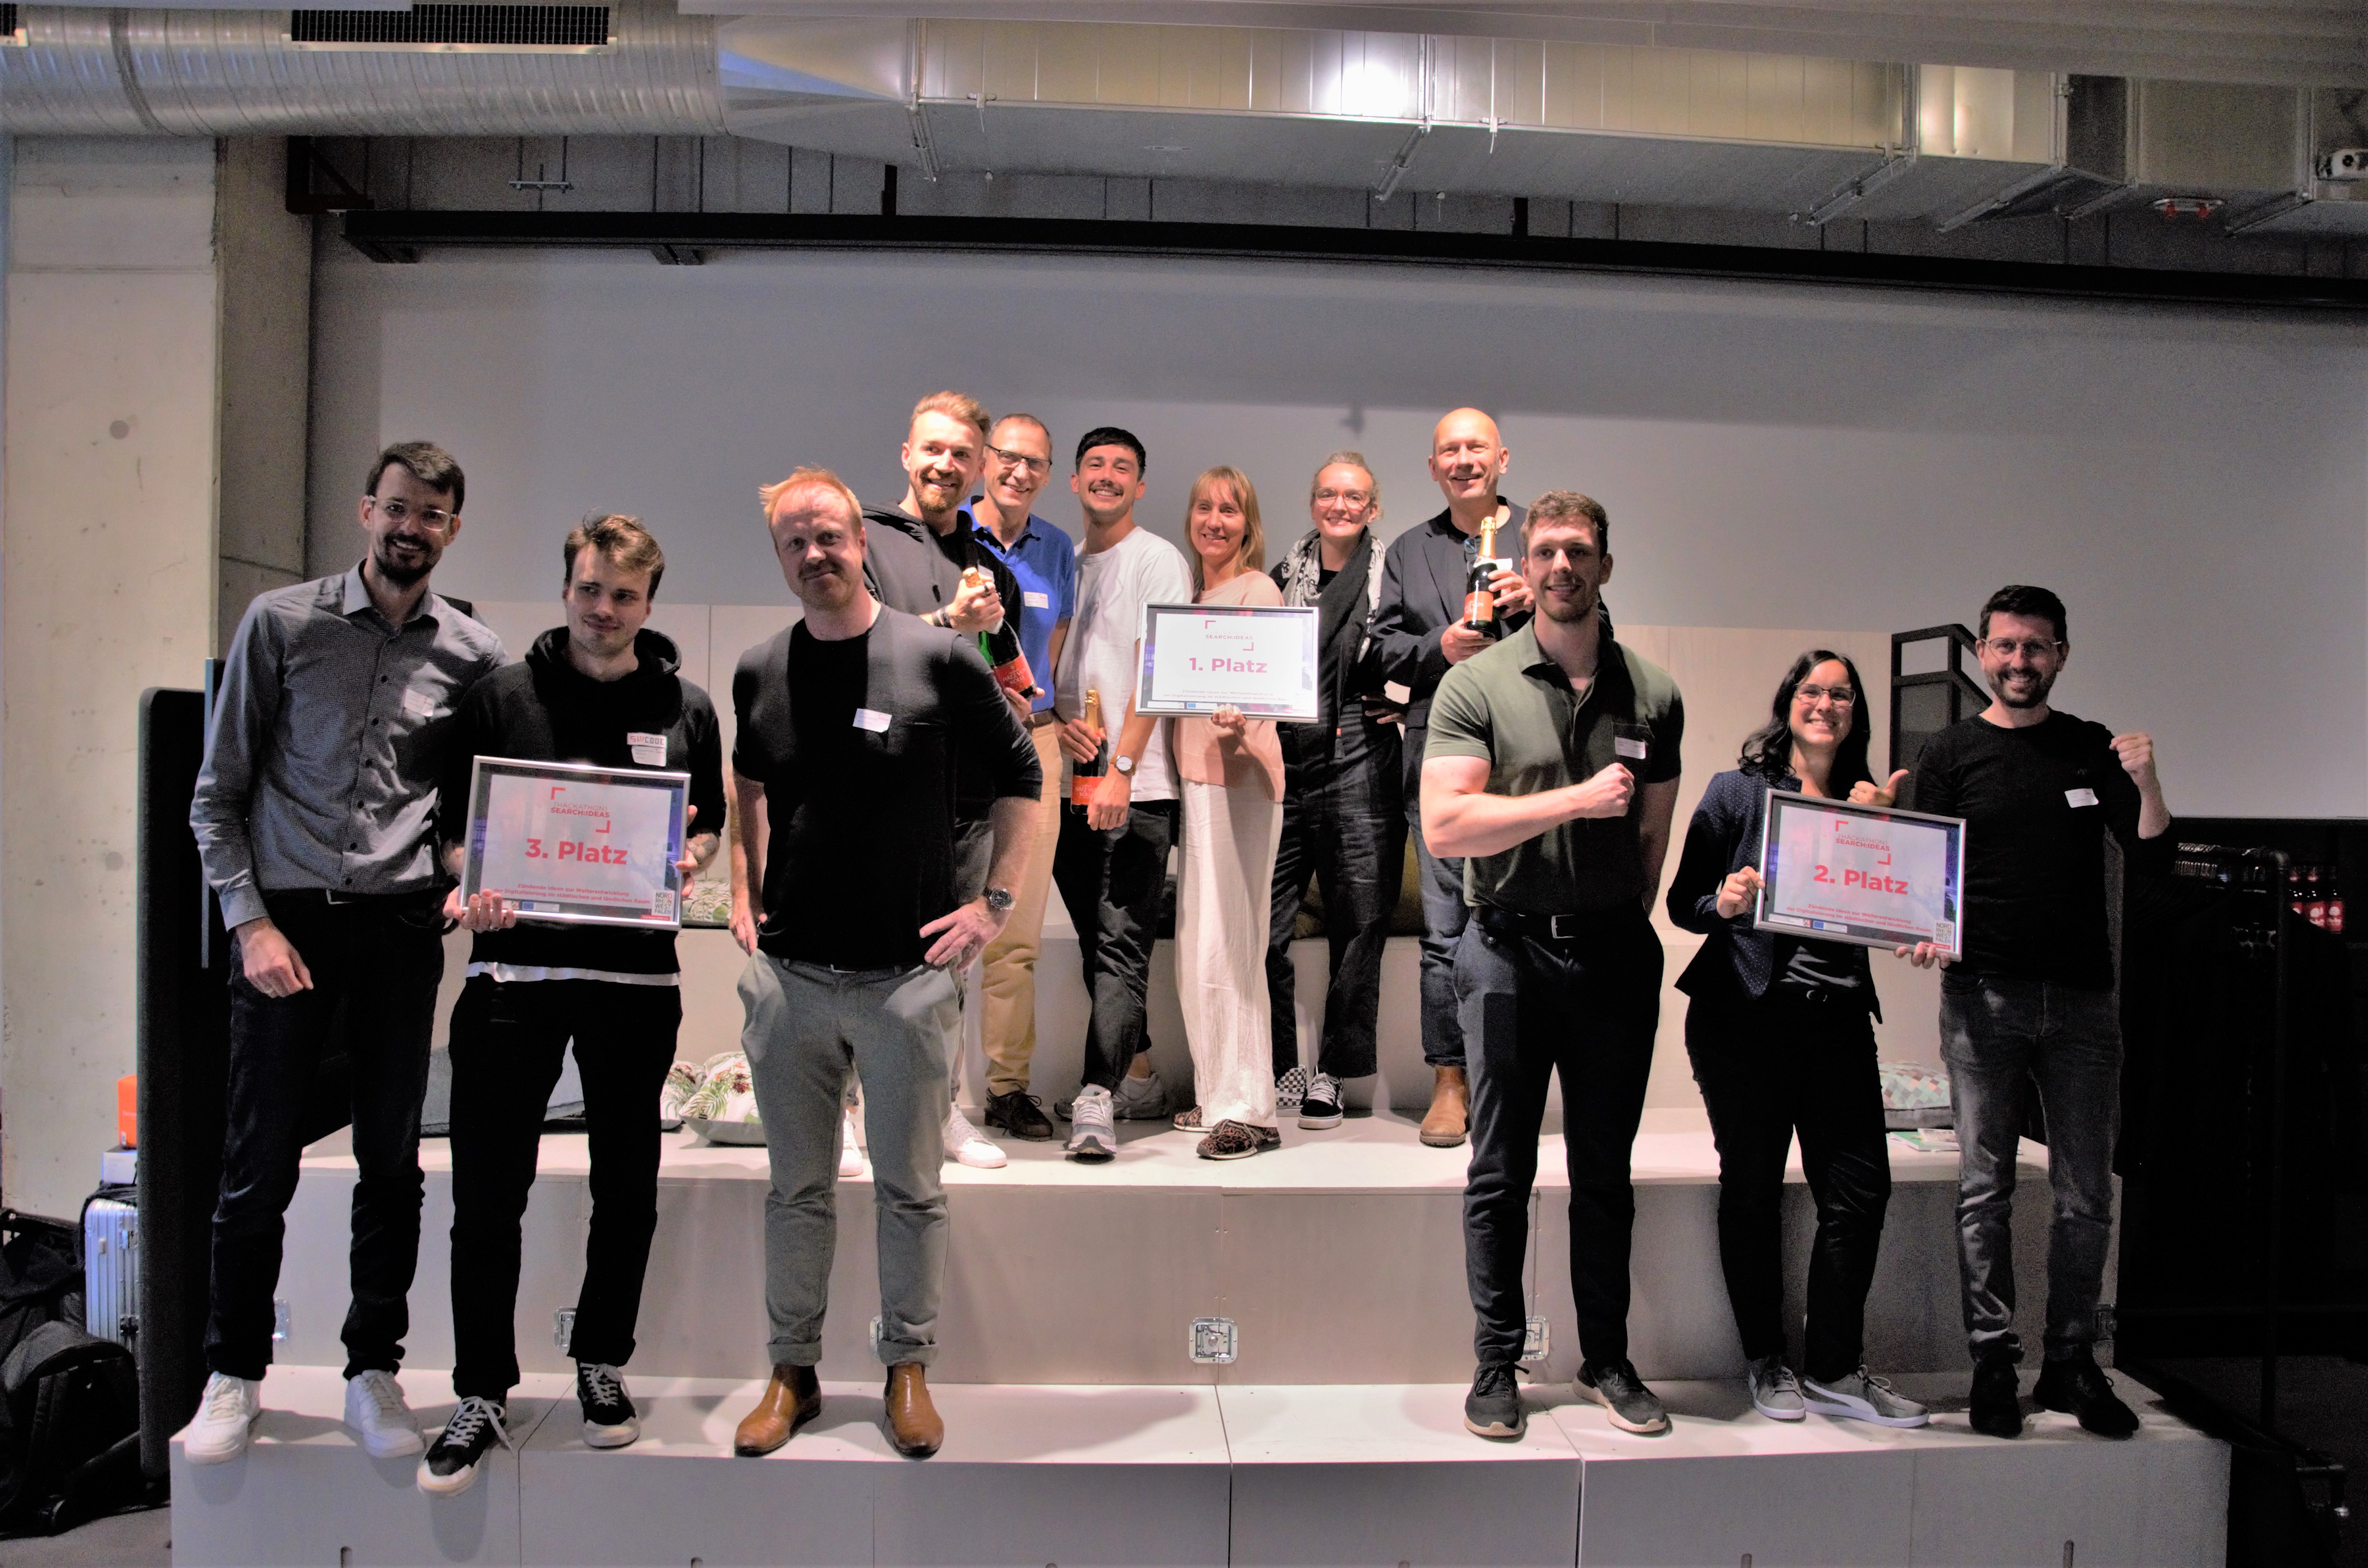 Drei Gruppen von Menschen halten Schilder mit "1. Platz", "2. Platz" und "3. Platz" hoch. Es handelt sich dabei um die Teams mit den besten Ideen beim 1. Hackathon des Tourismus NRW. 